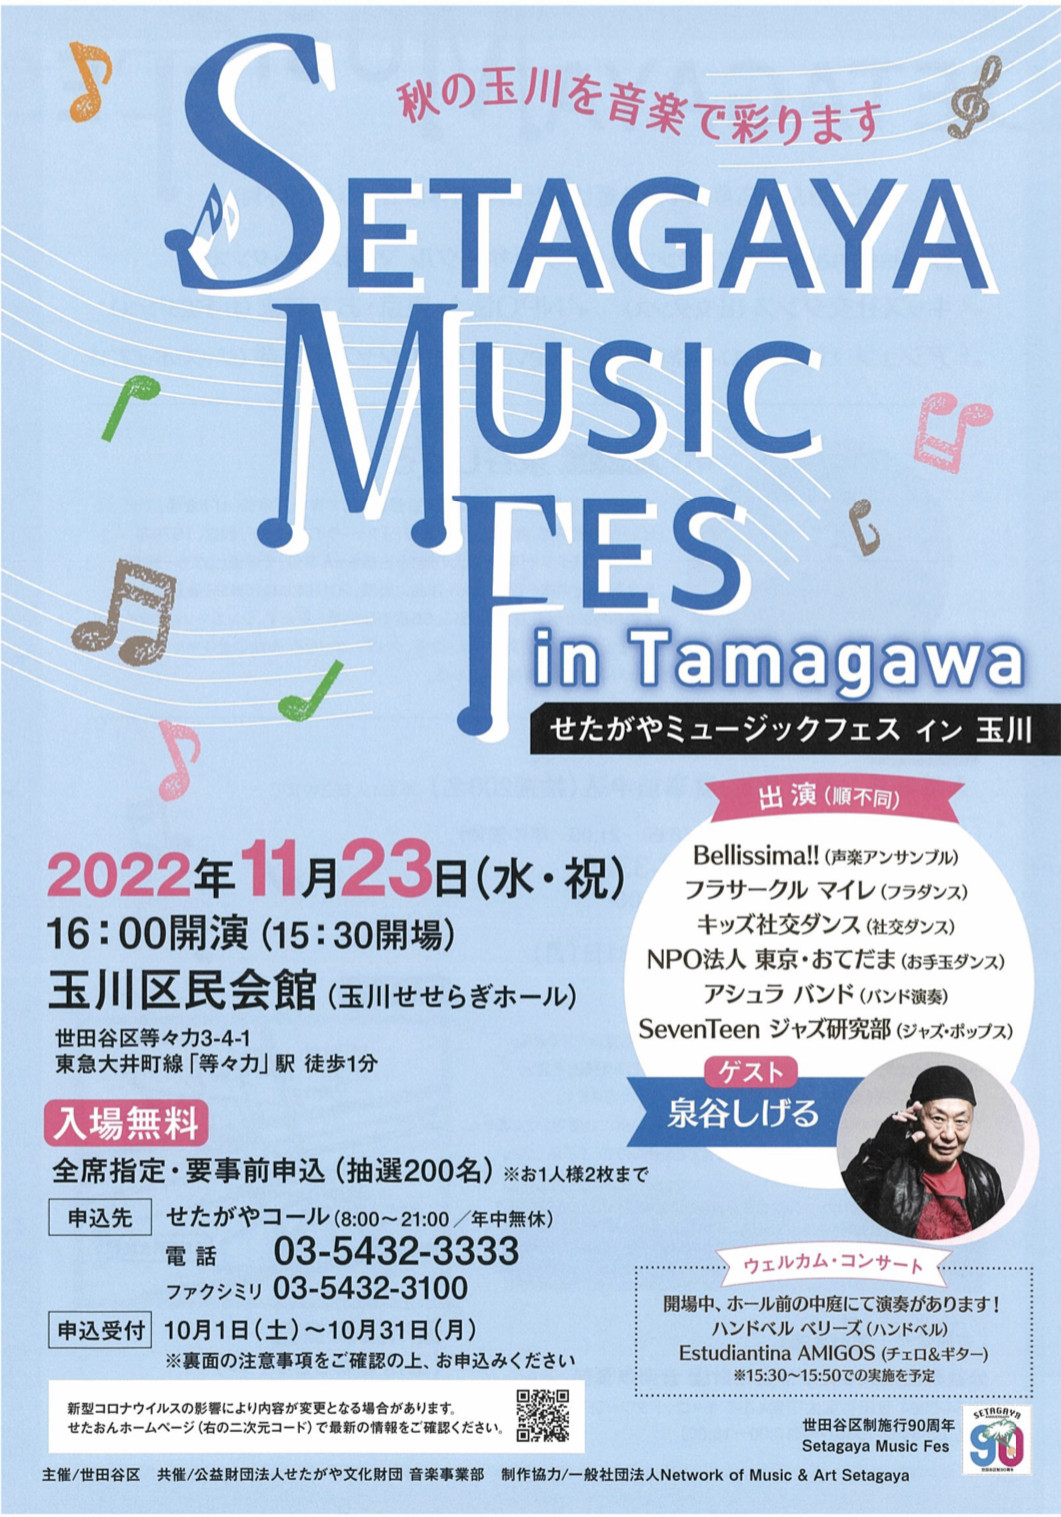 【イベント】Setagaya Music Fes in 玉川（せたがやミュージックフェスin玉川）